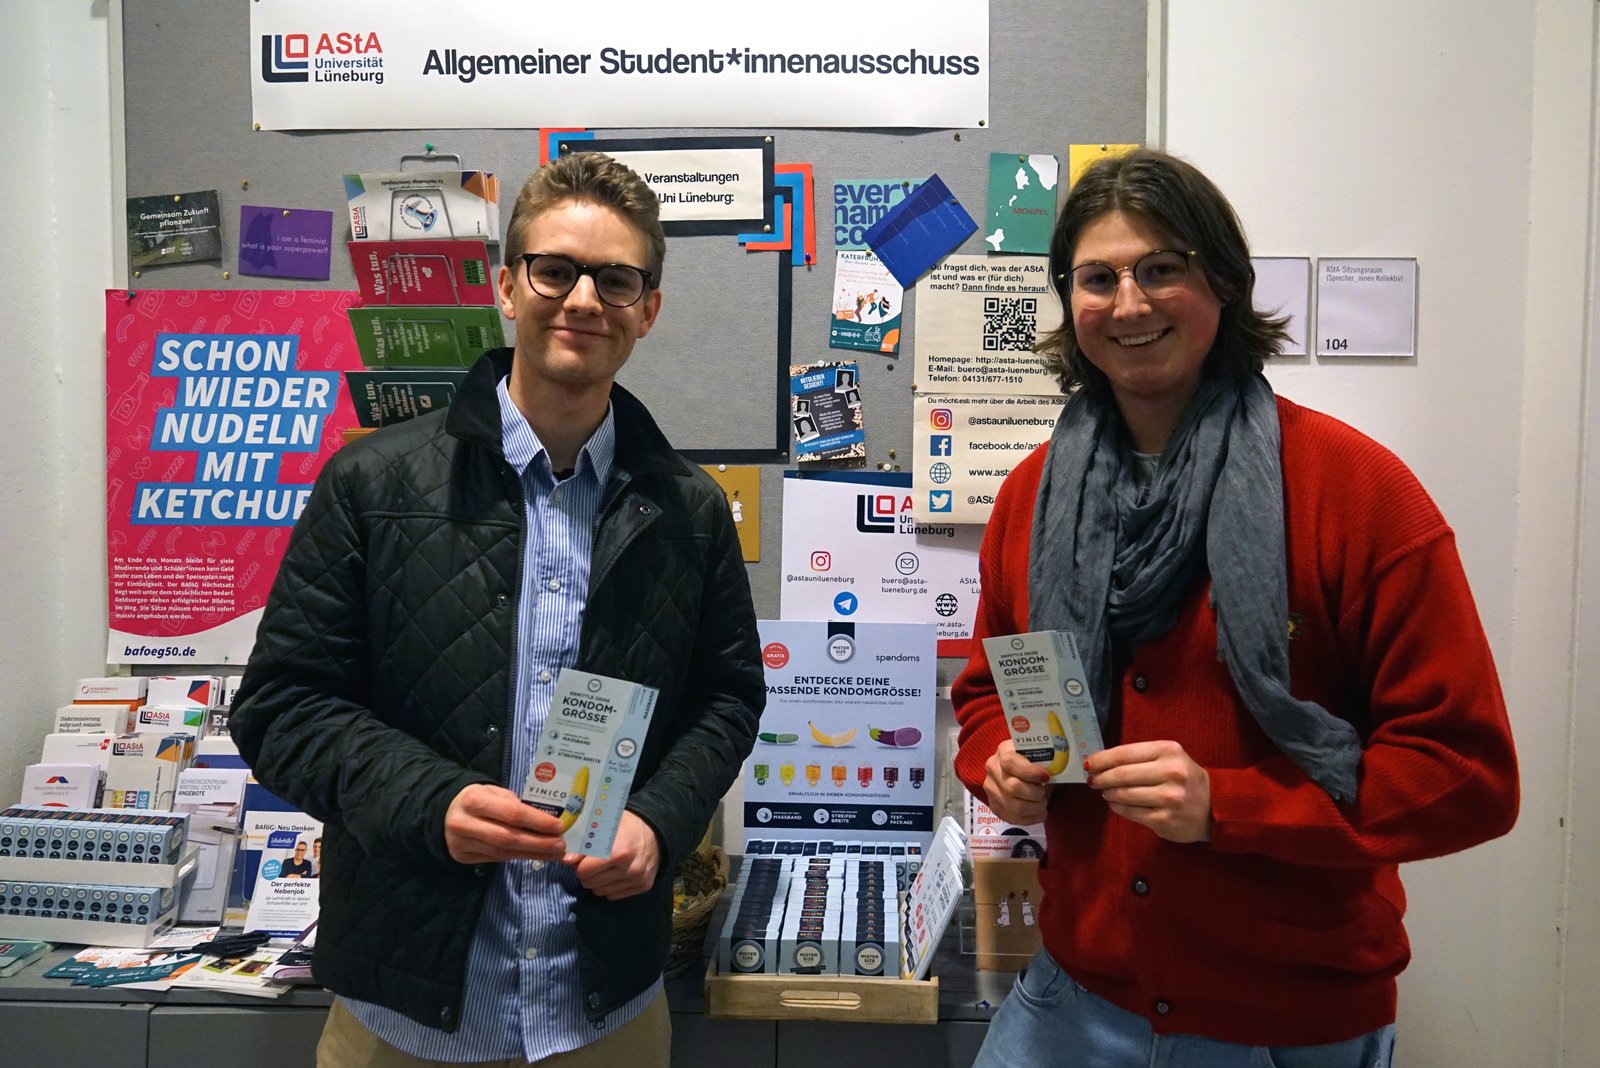 Luis từ Spondoms (trái) mở hộp phân phối bao cao su miễn phí cùng với Max từ AStA của Đại học Leuphana Lüneburg (phải).